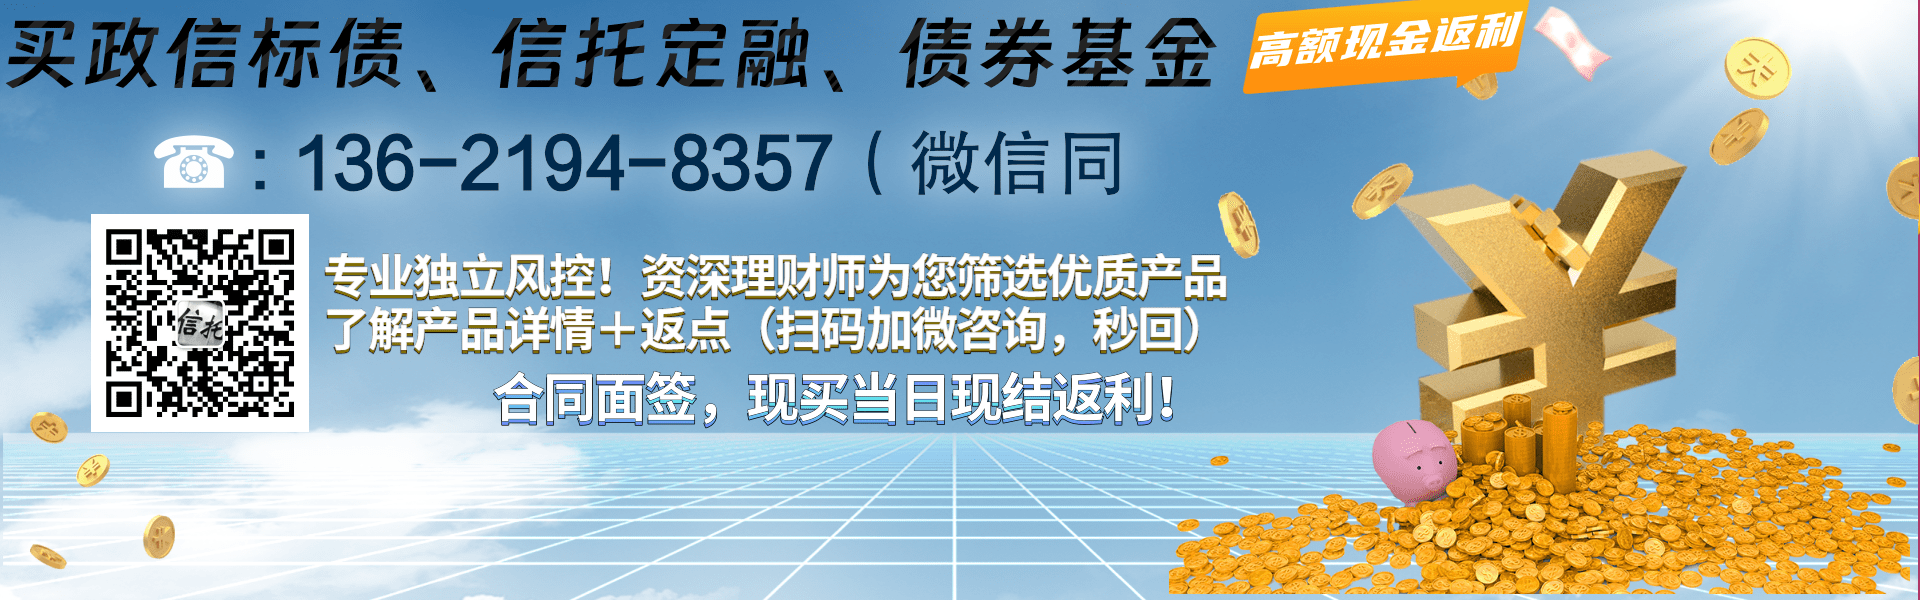 华能电子商务平台官网